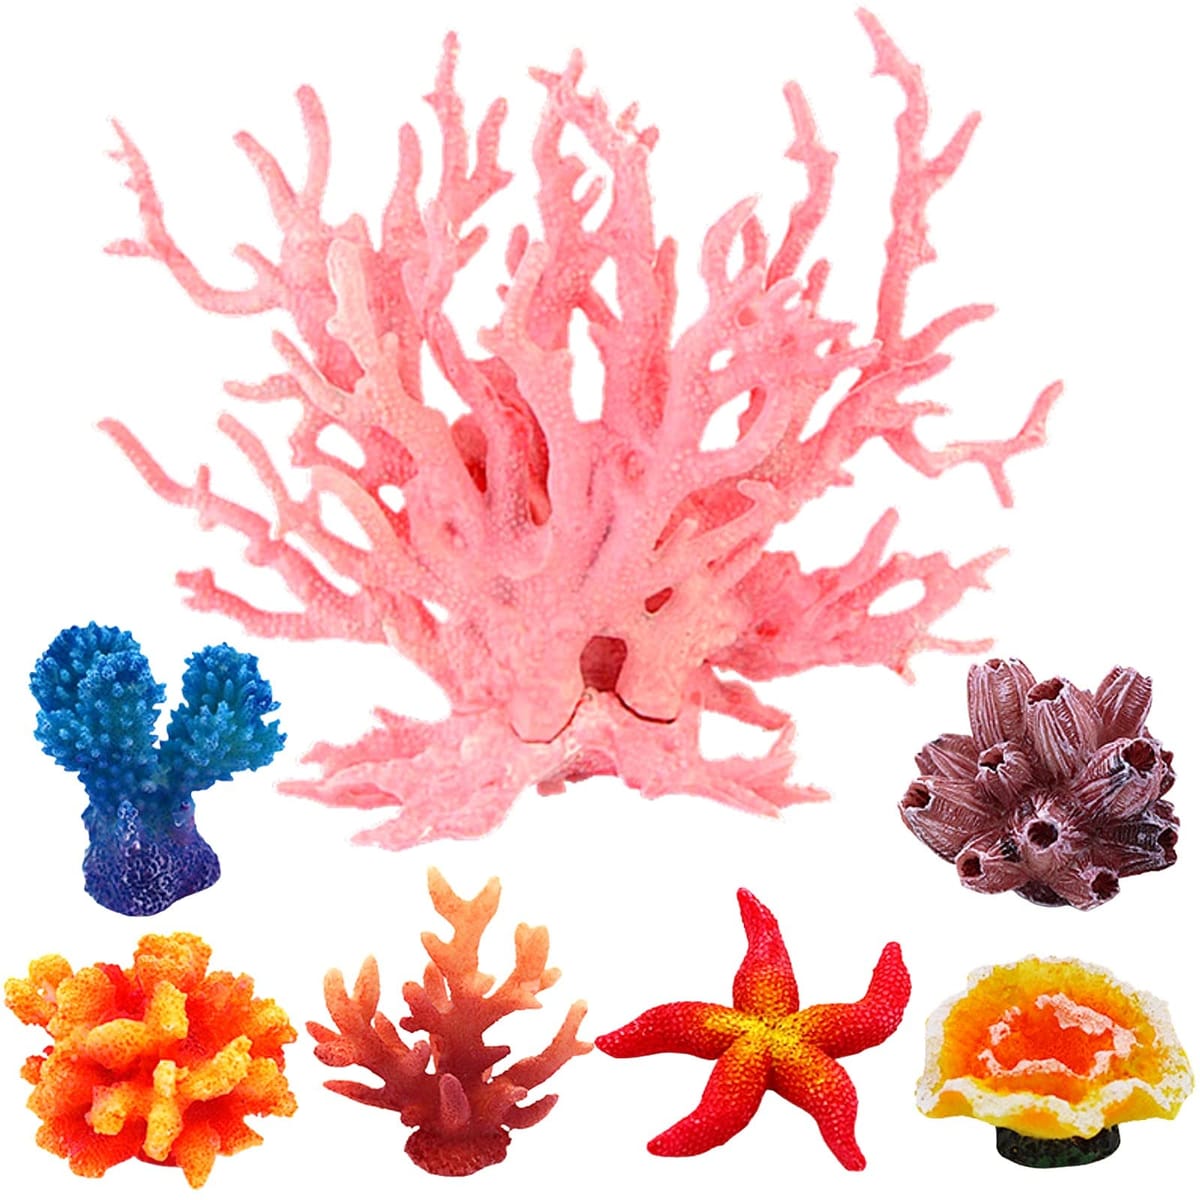 heizi 水槽を華やかに彩る アクアリウム オブジェ 珊瑚 大小7体セット サンゴ オーナメント 装飾 熱帯魚 隠れ家